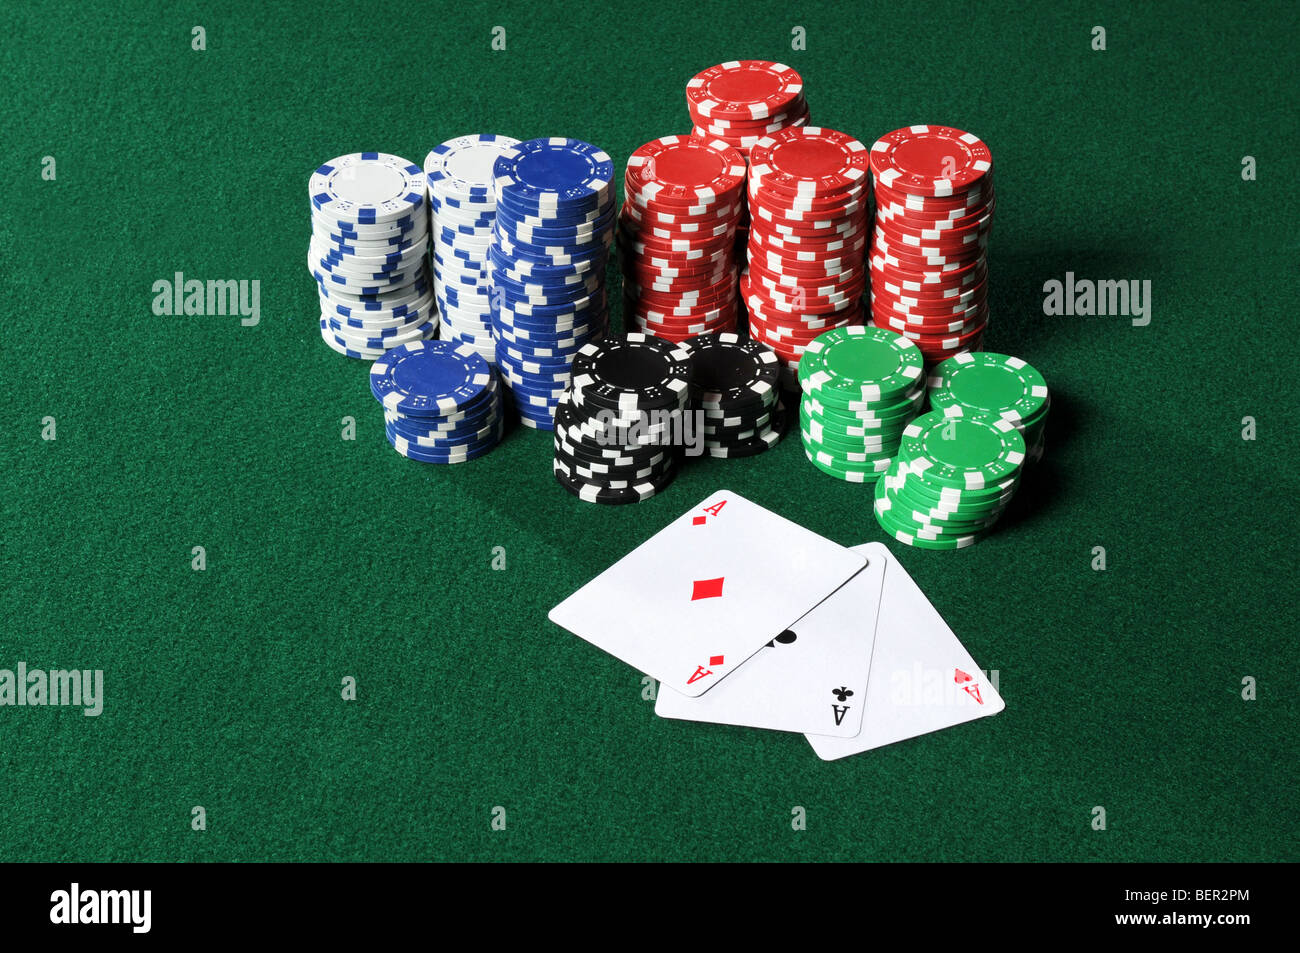 Quatre As et une pile de jetons de poker sur table verte Banque D'Images